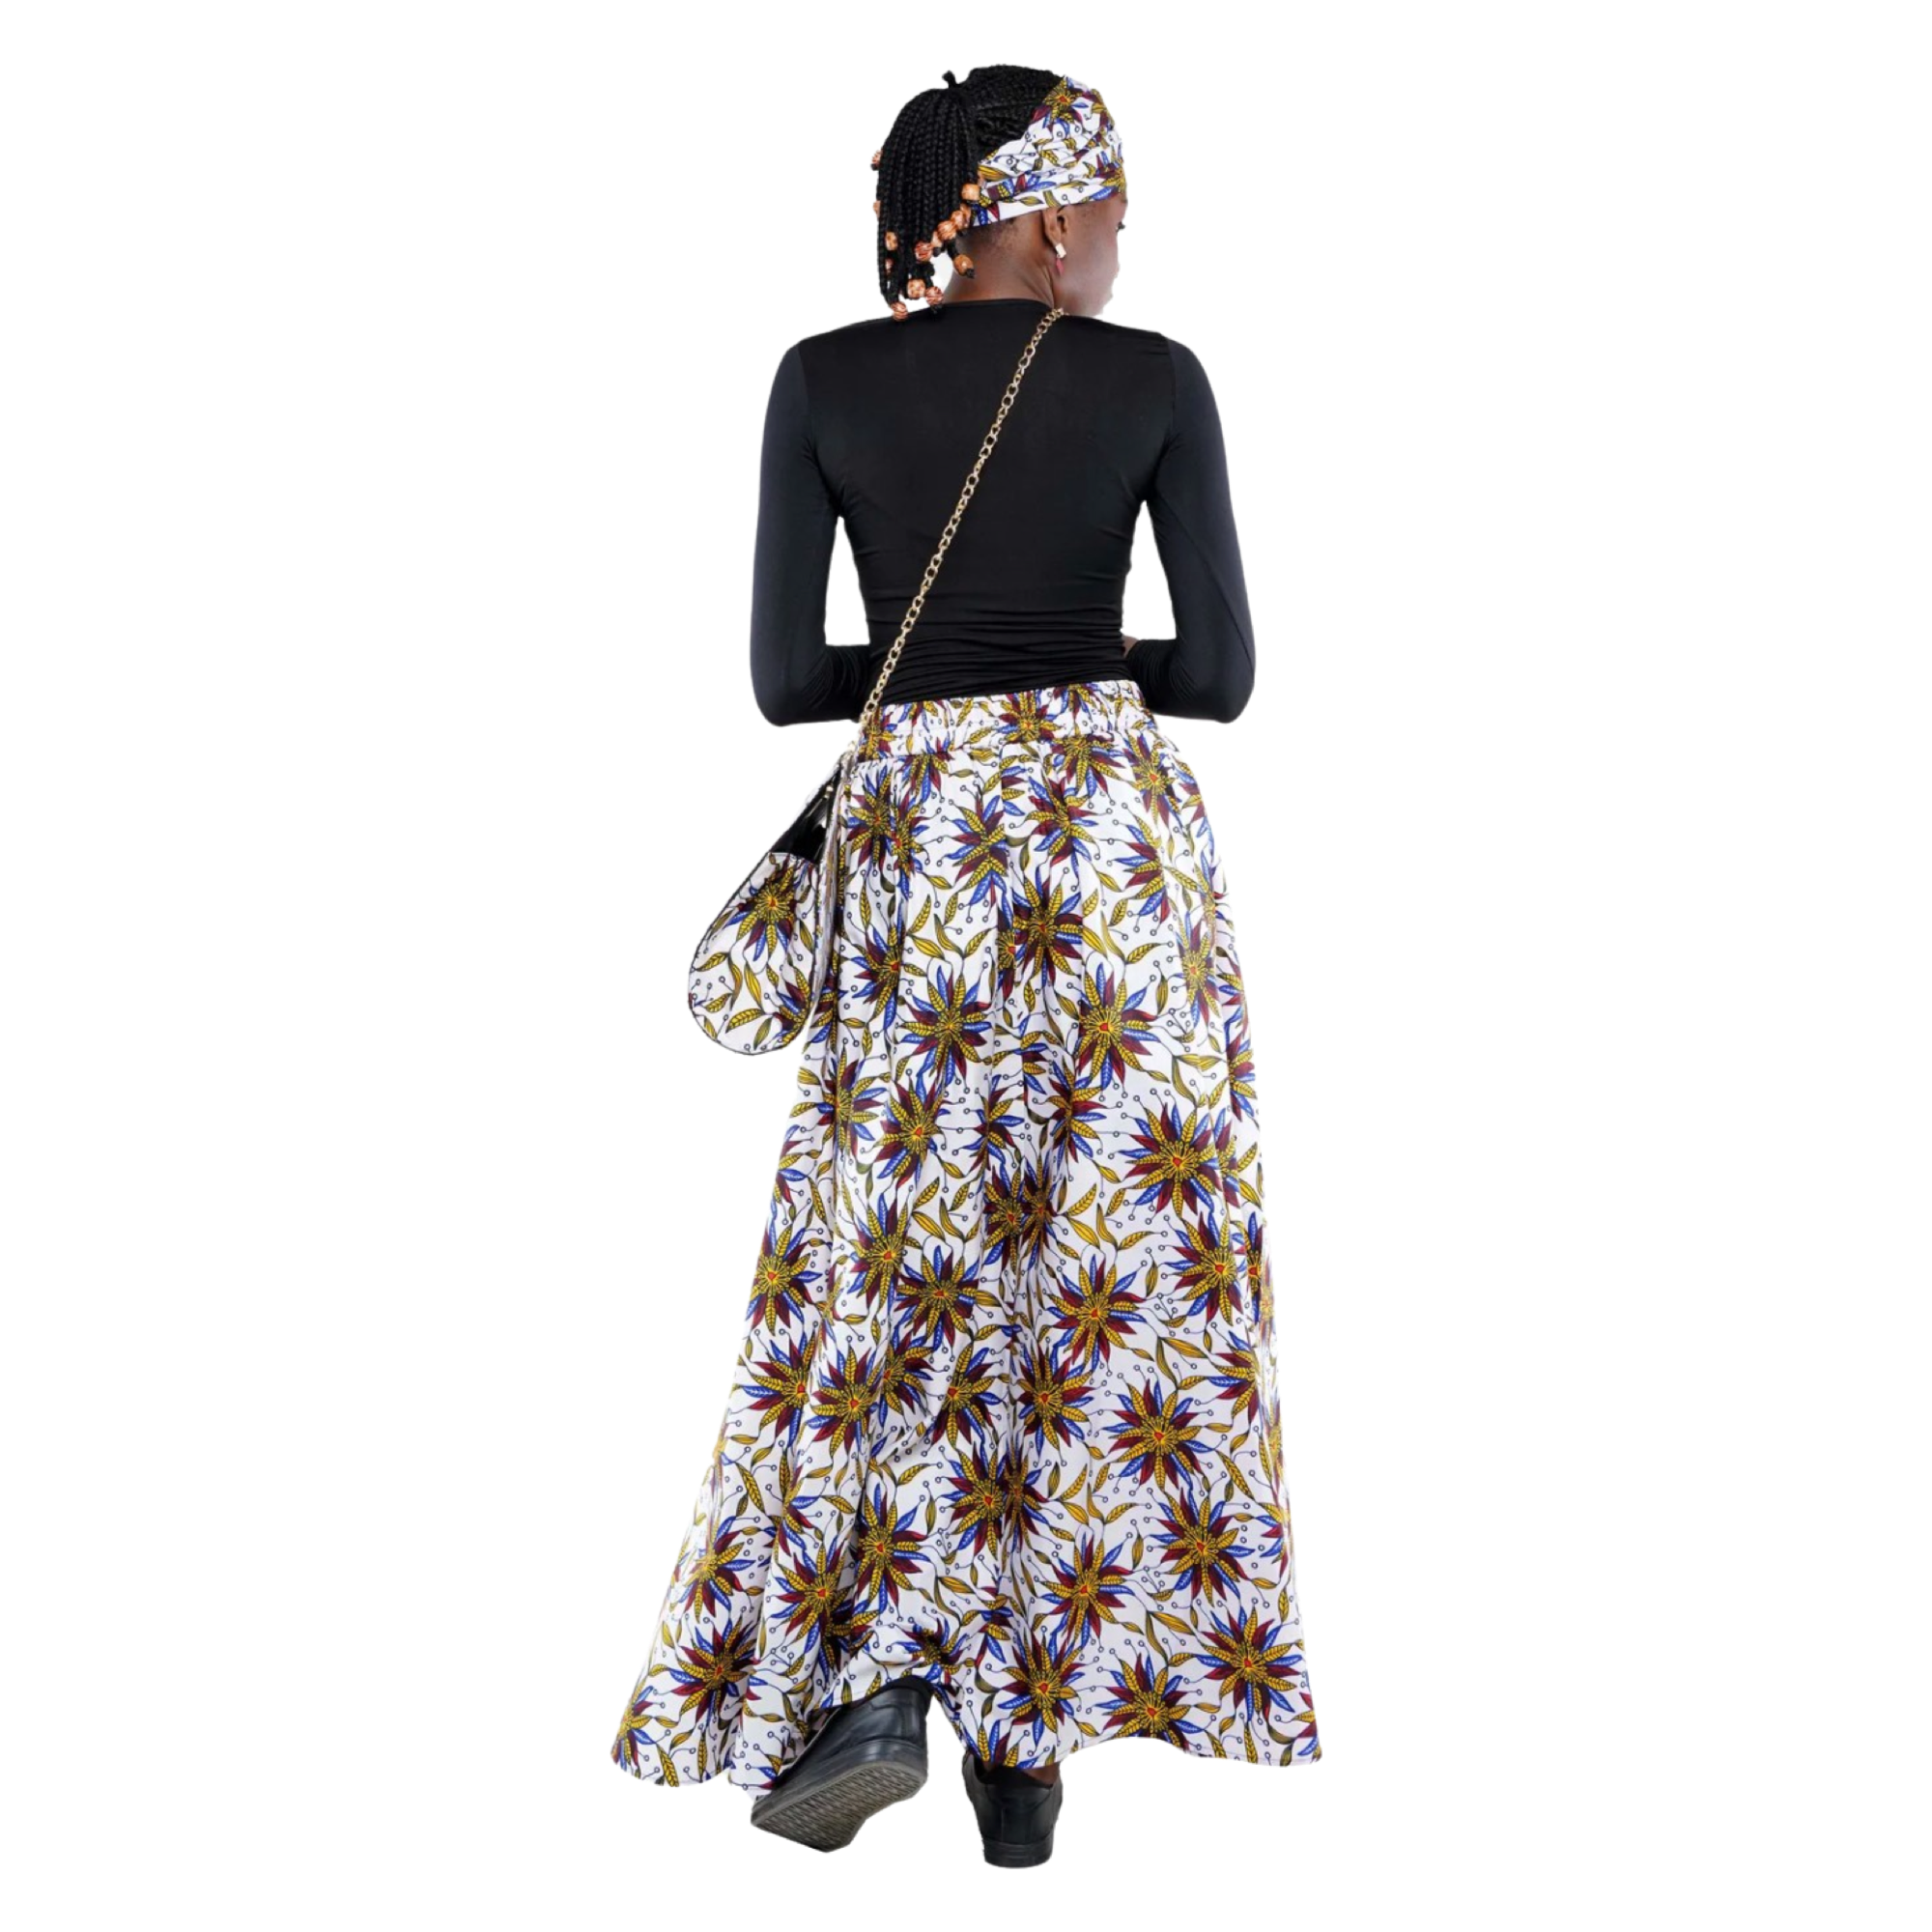 Women's African Print High Waist Pleated A Line Long Maxi Skirts W/Handbag.